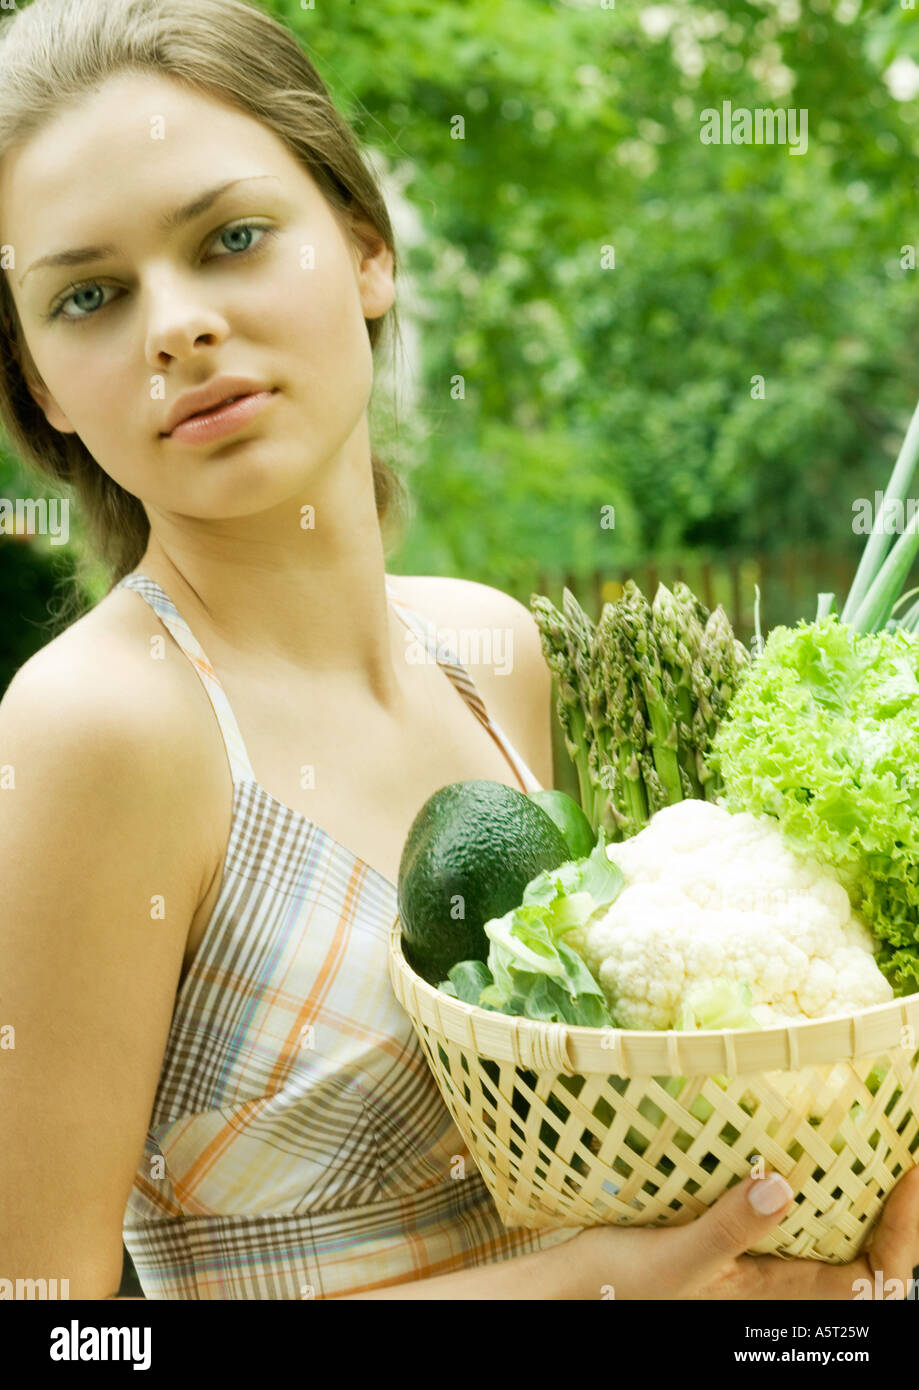 Woman holding basket full of fresh vegetables Stock Photo